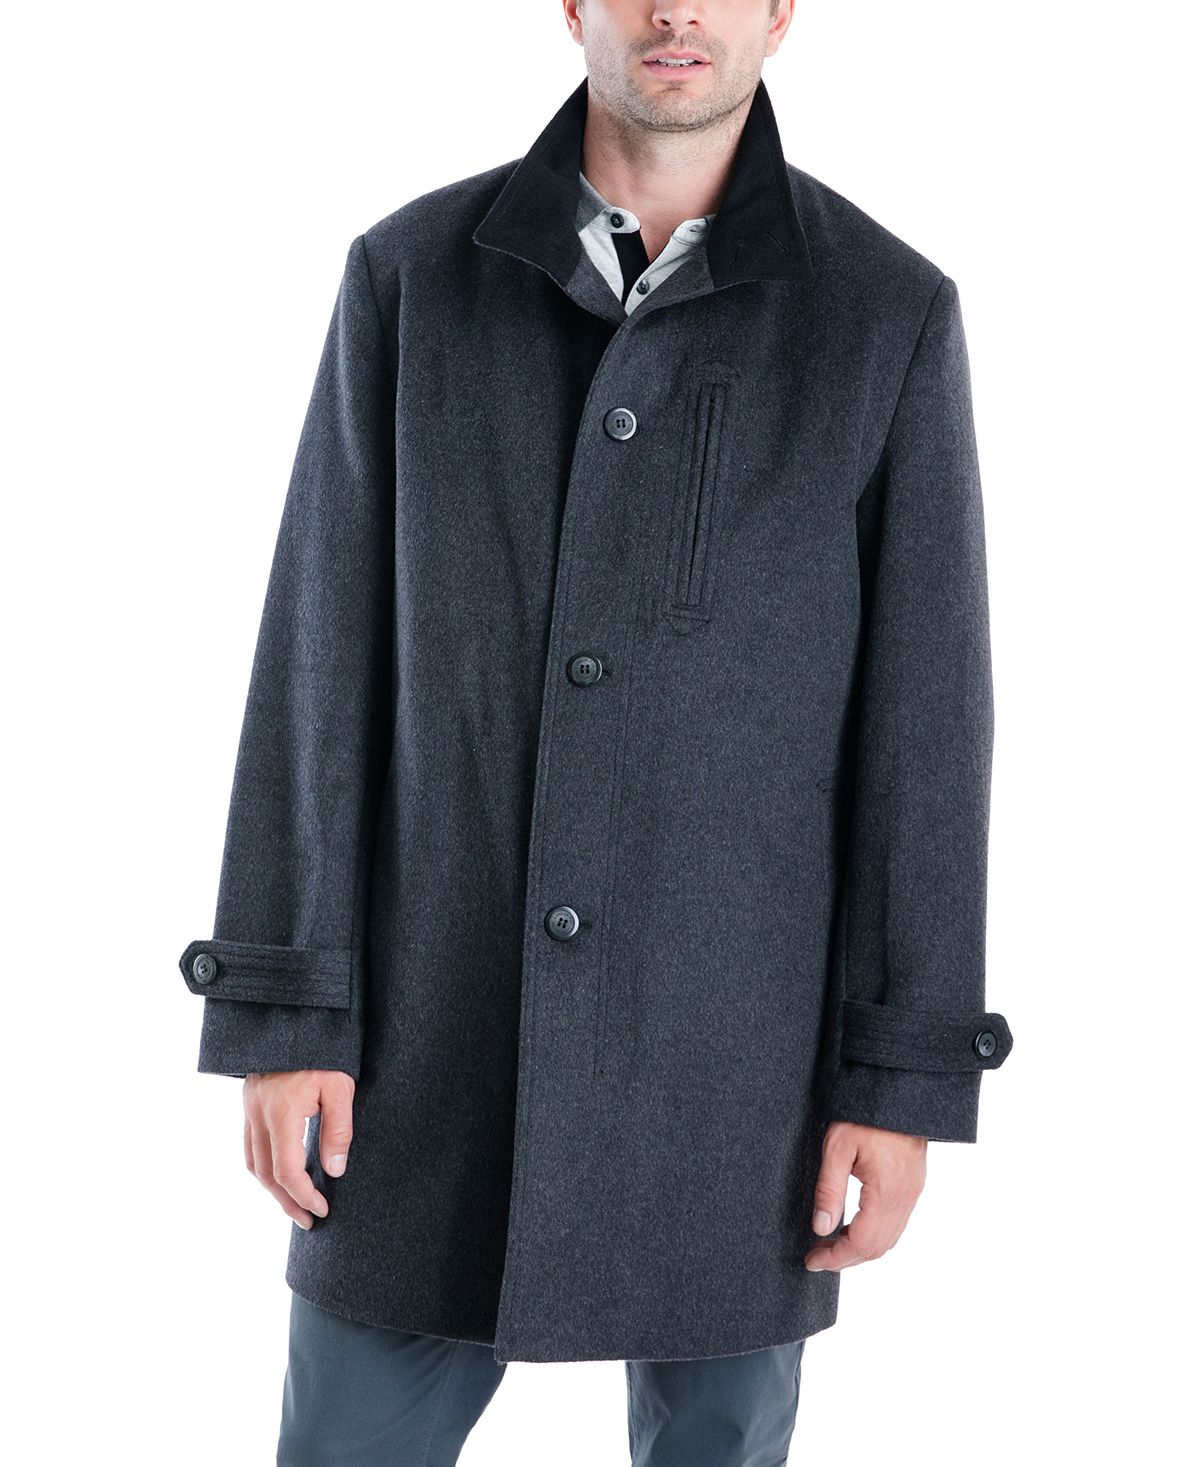 London Fog Clark Classic-fit Overcoat Charcoal